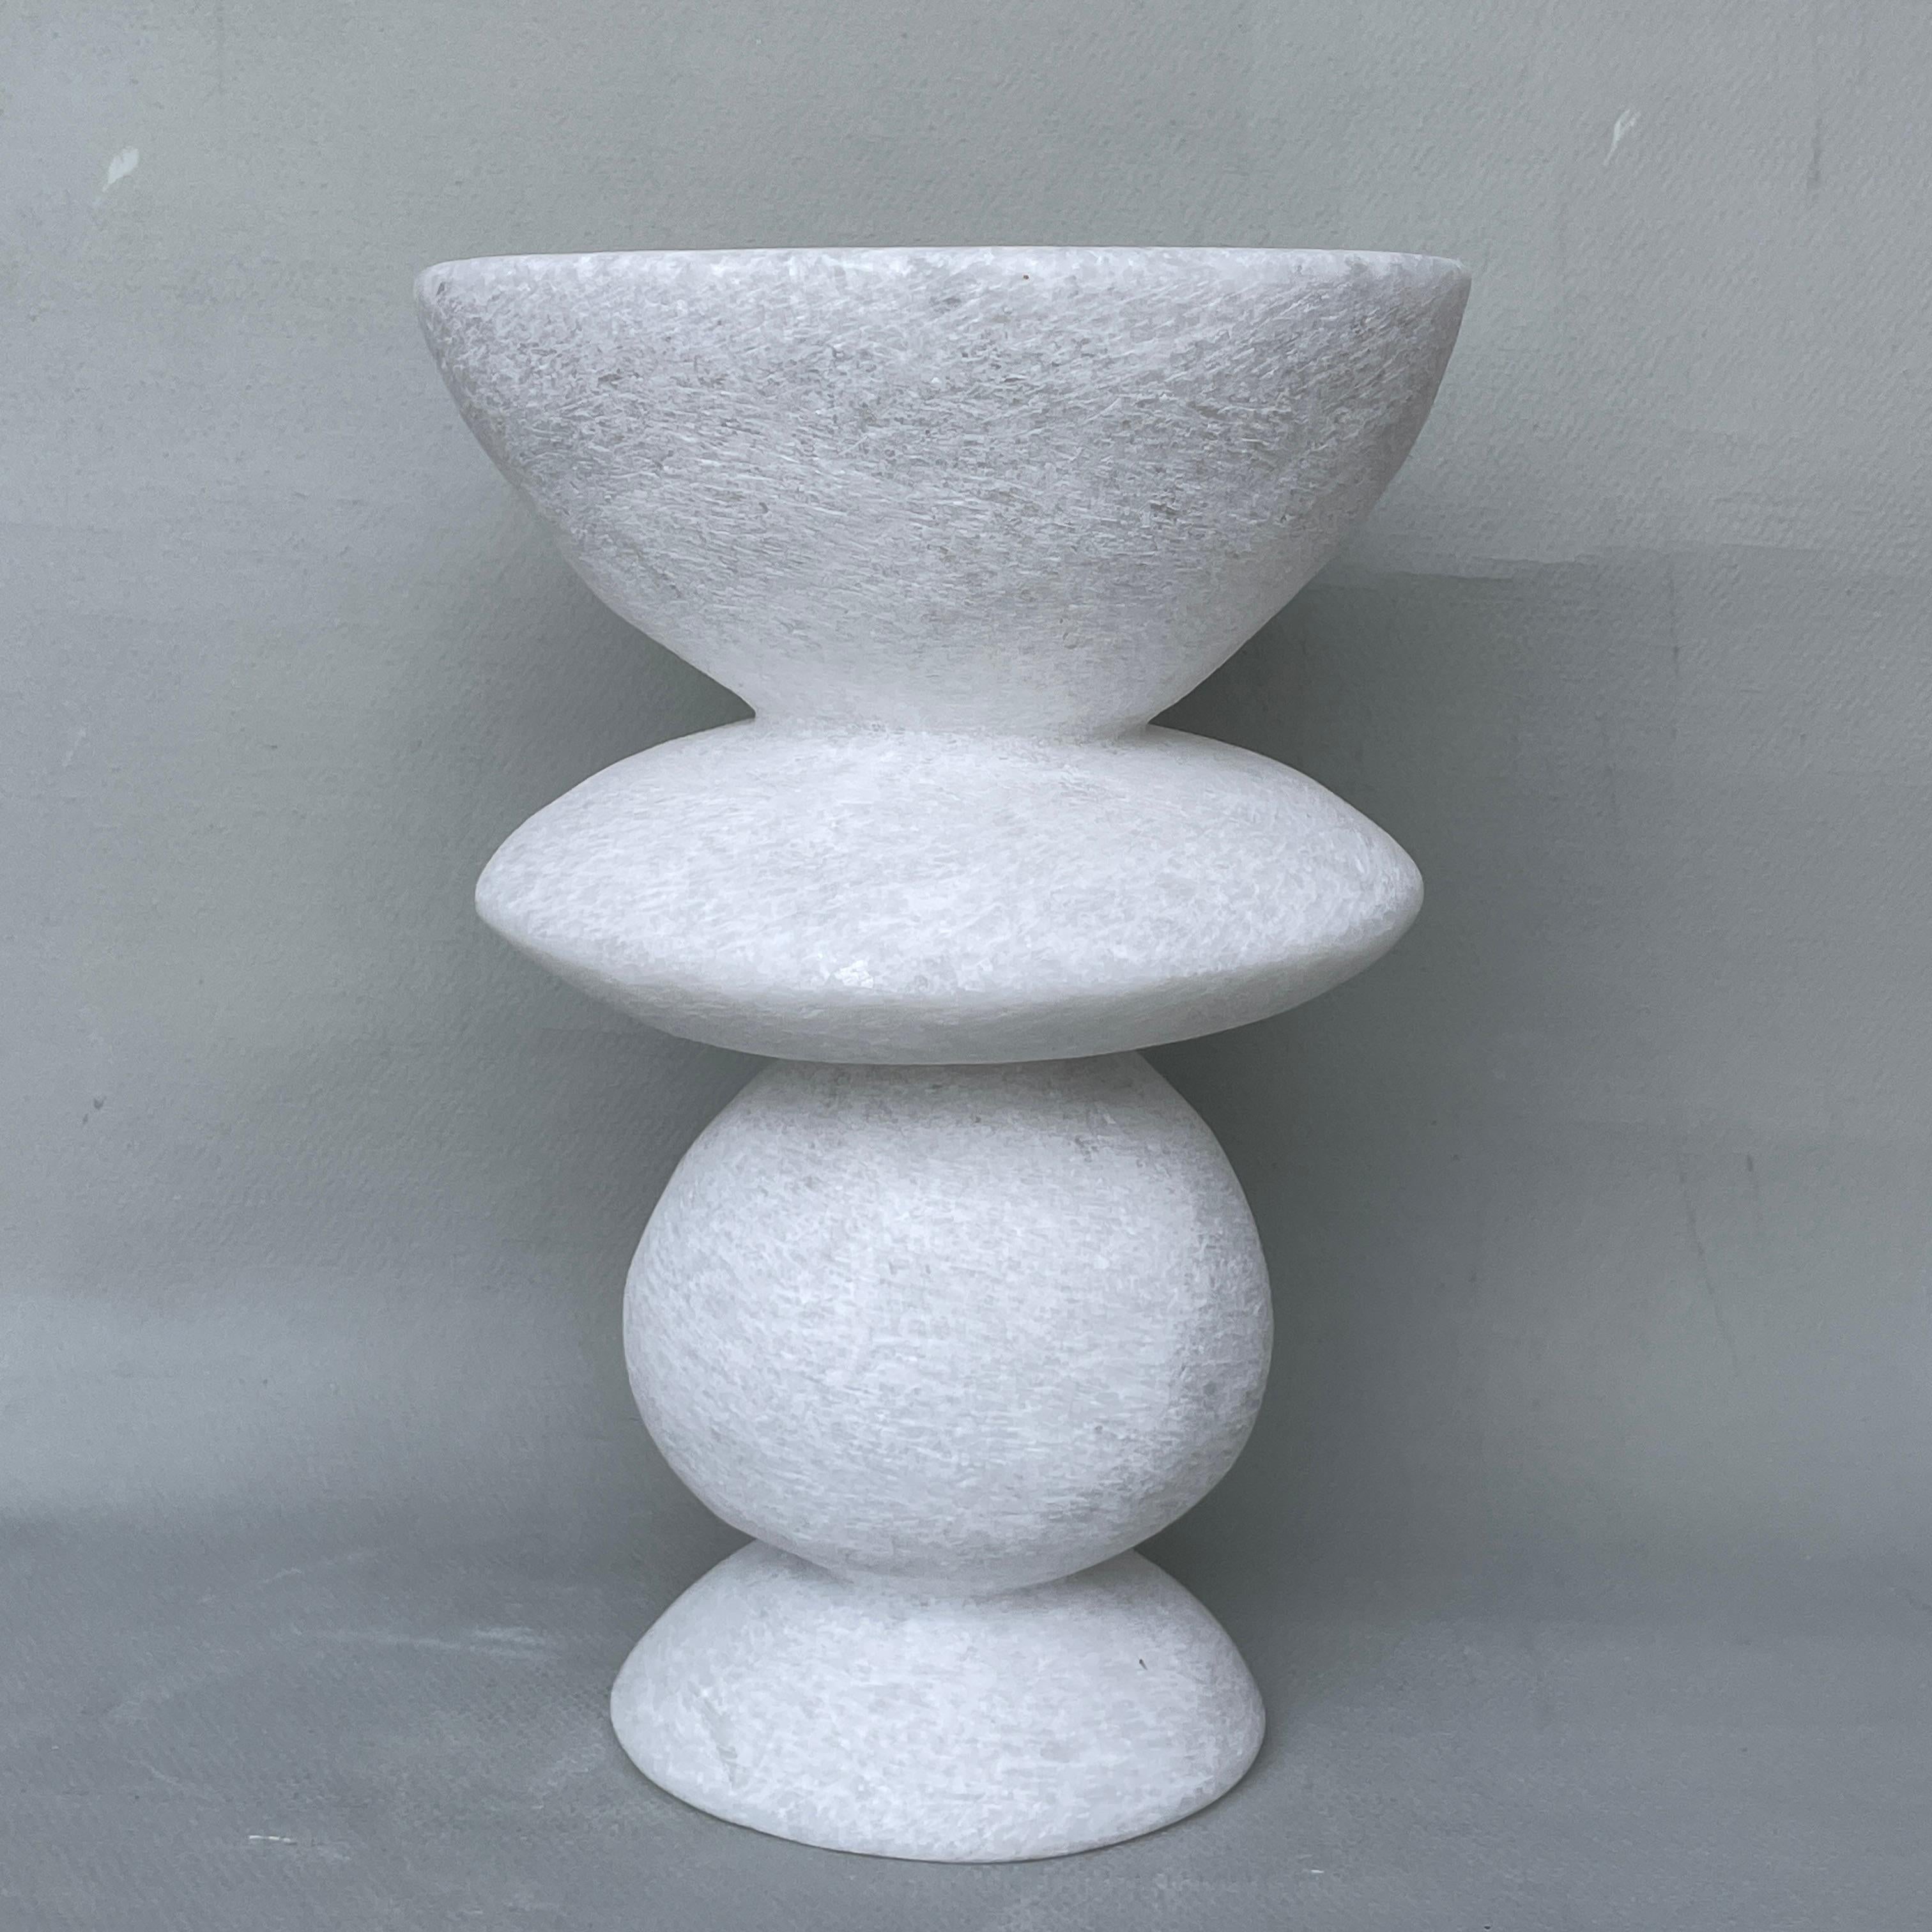 Vase unique en marbre Naxian de Tom Von Kaenel
Pièce unique.
Dimensions : Ø 17 x H 25 cm : Ø 17 x H 25 cm.
MATERIAL : Marbre de Naxe.

Les surfaces des objets ne sont pas scellées, elles ne sont pas protégées contre l'acide. Les lignes du travail